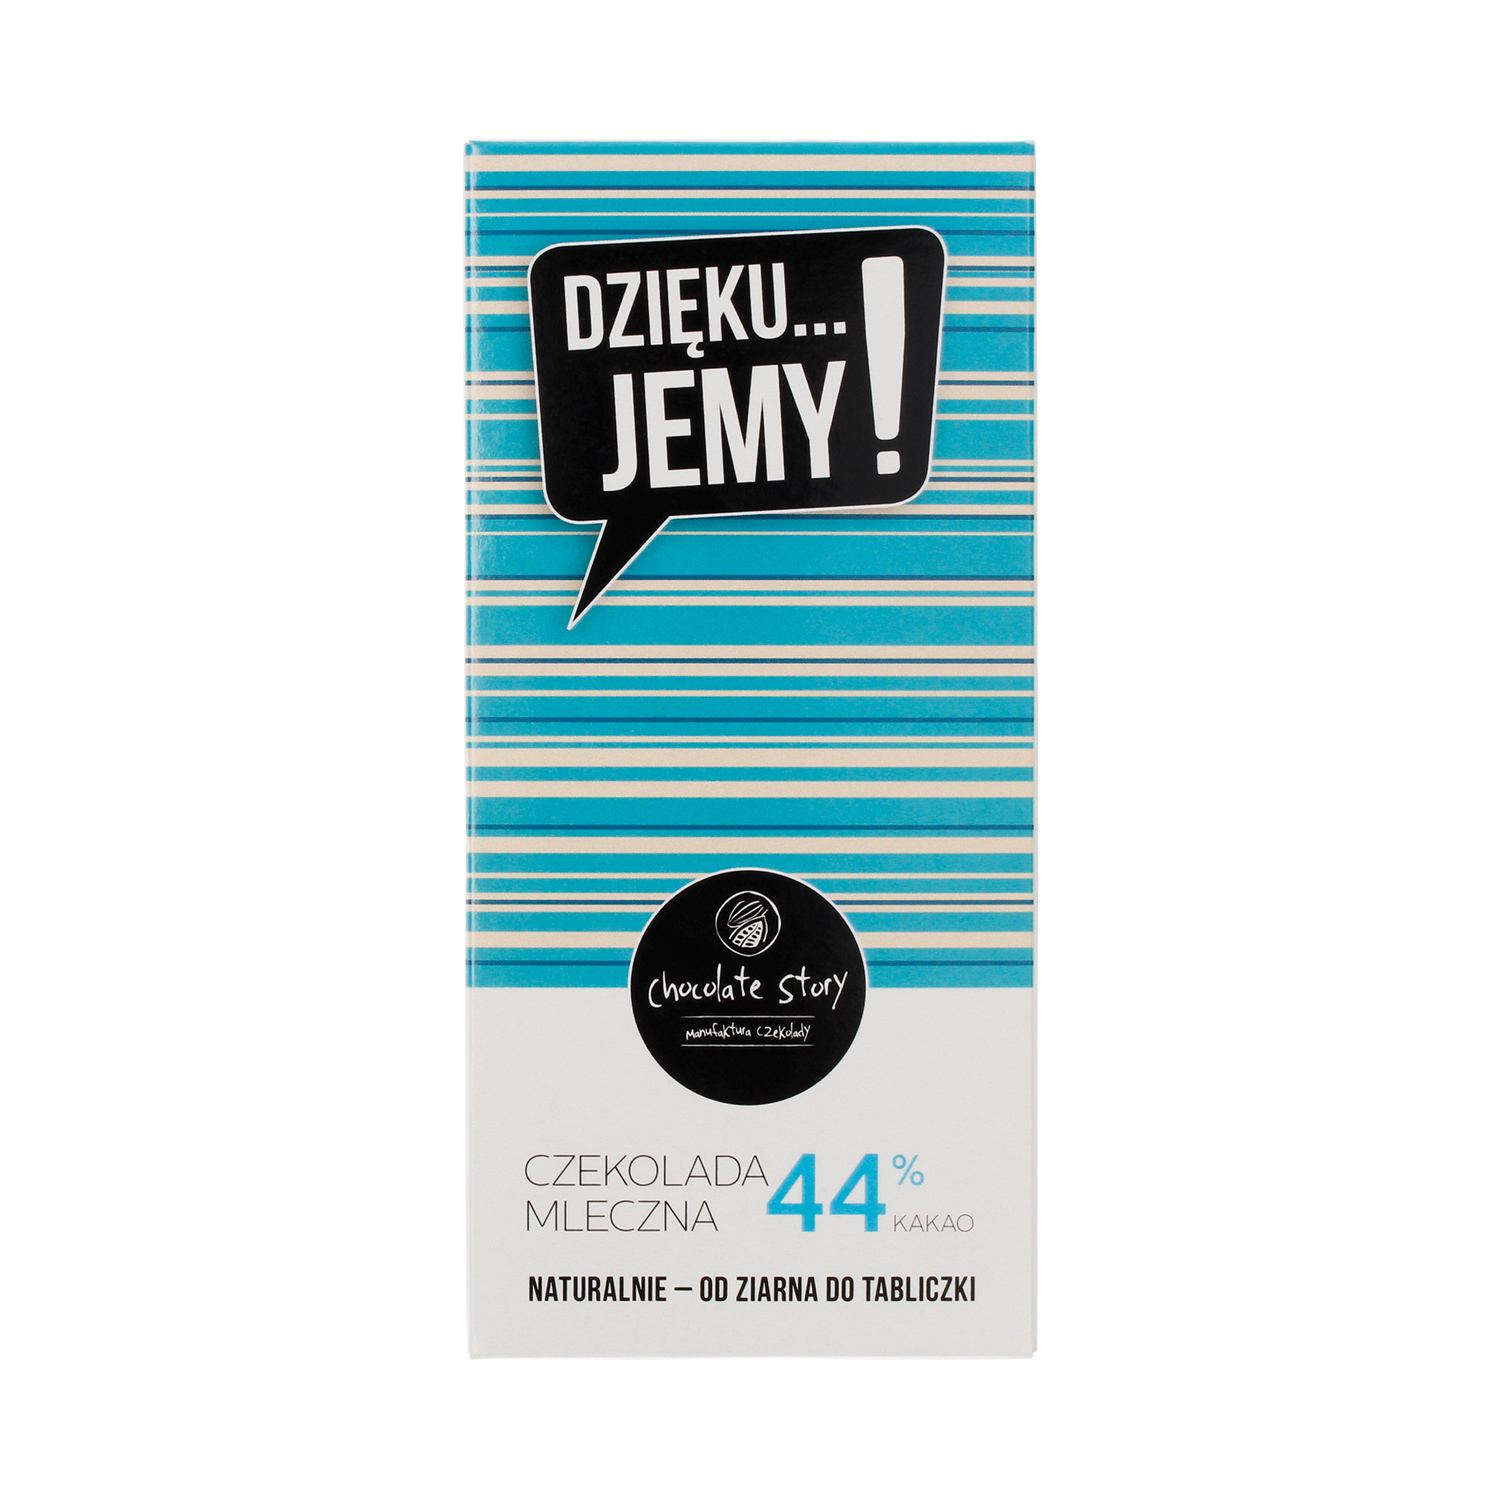 Manufaktura Czekolady - Chocolate 44% DZIĘKU...JEMY! - Blue Pack